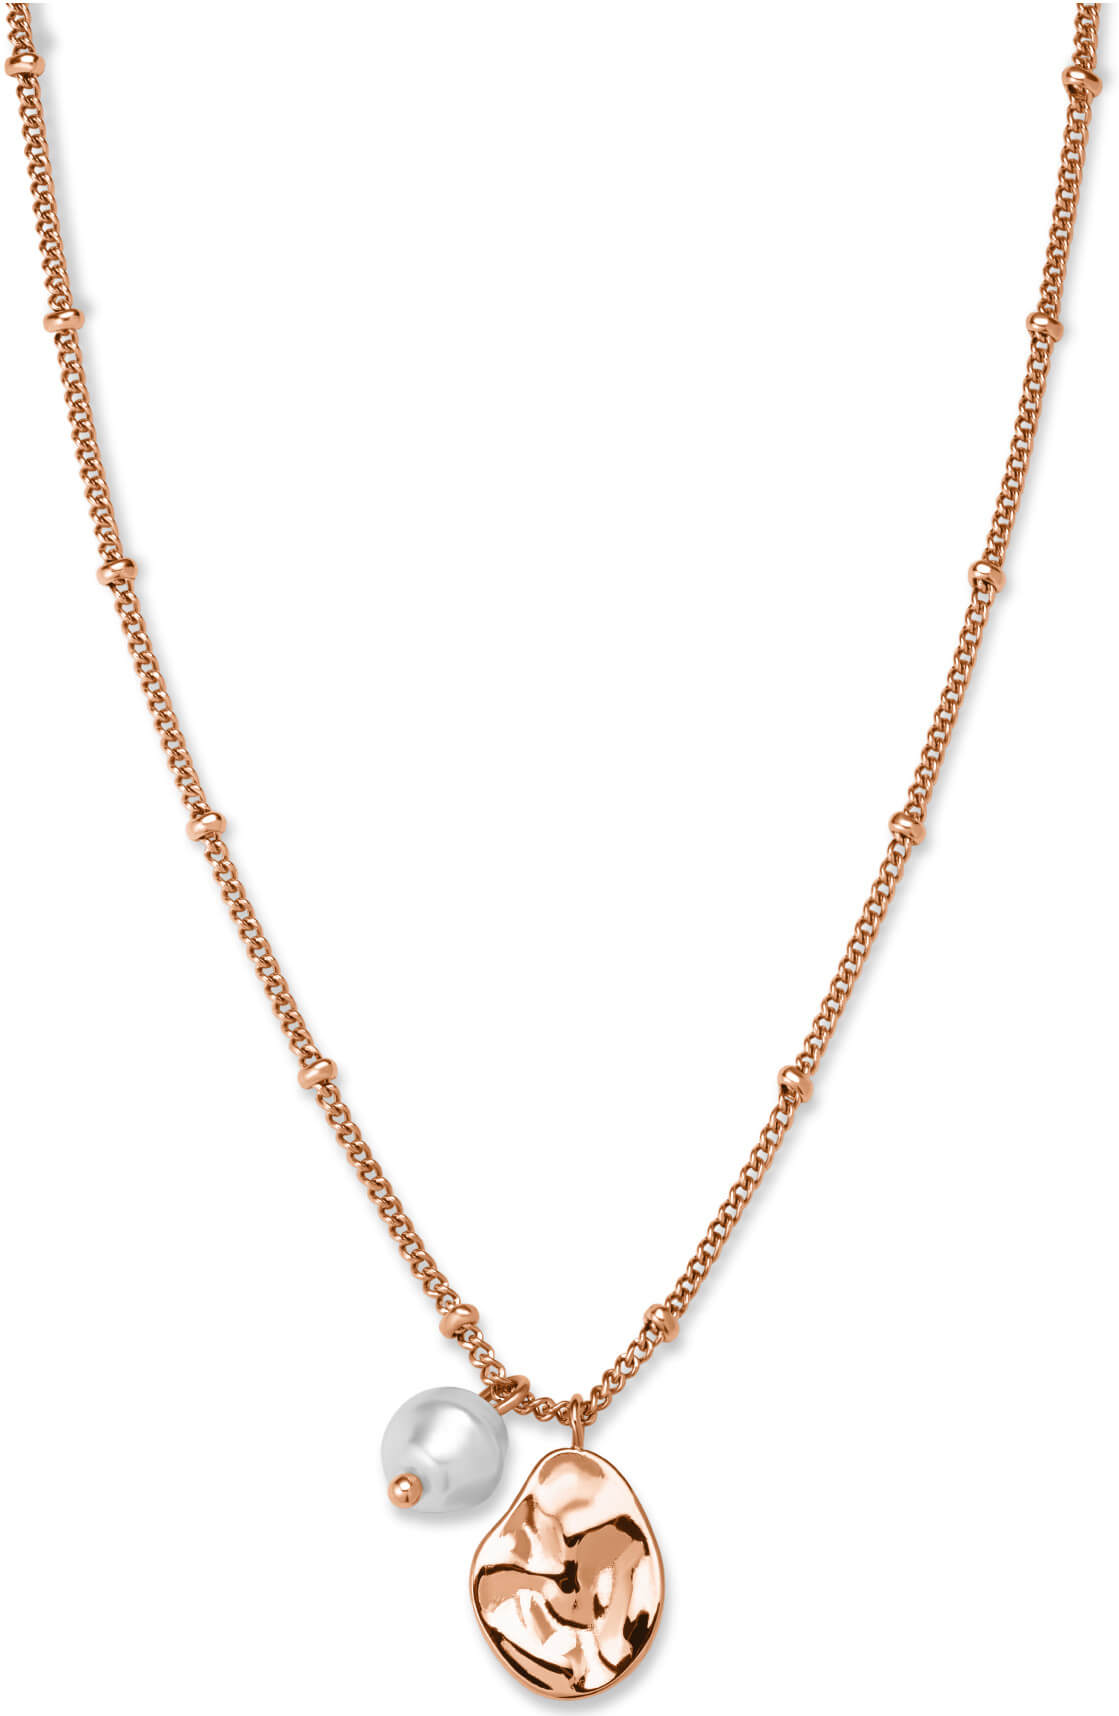 Rosefield Růžově zlacený náhrdelník s přívěsky Toccombo JTNPRG-J447